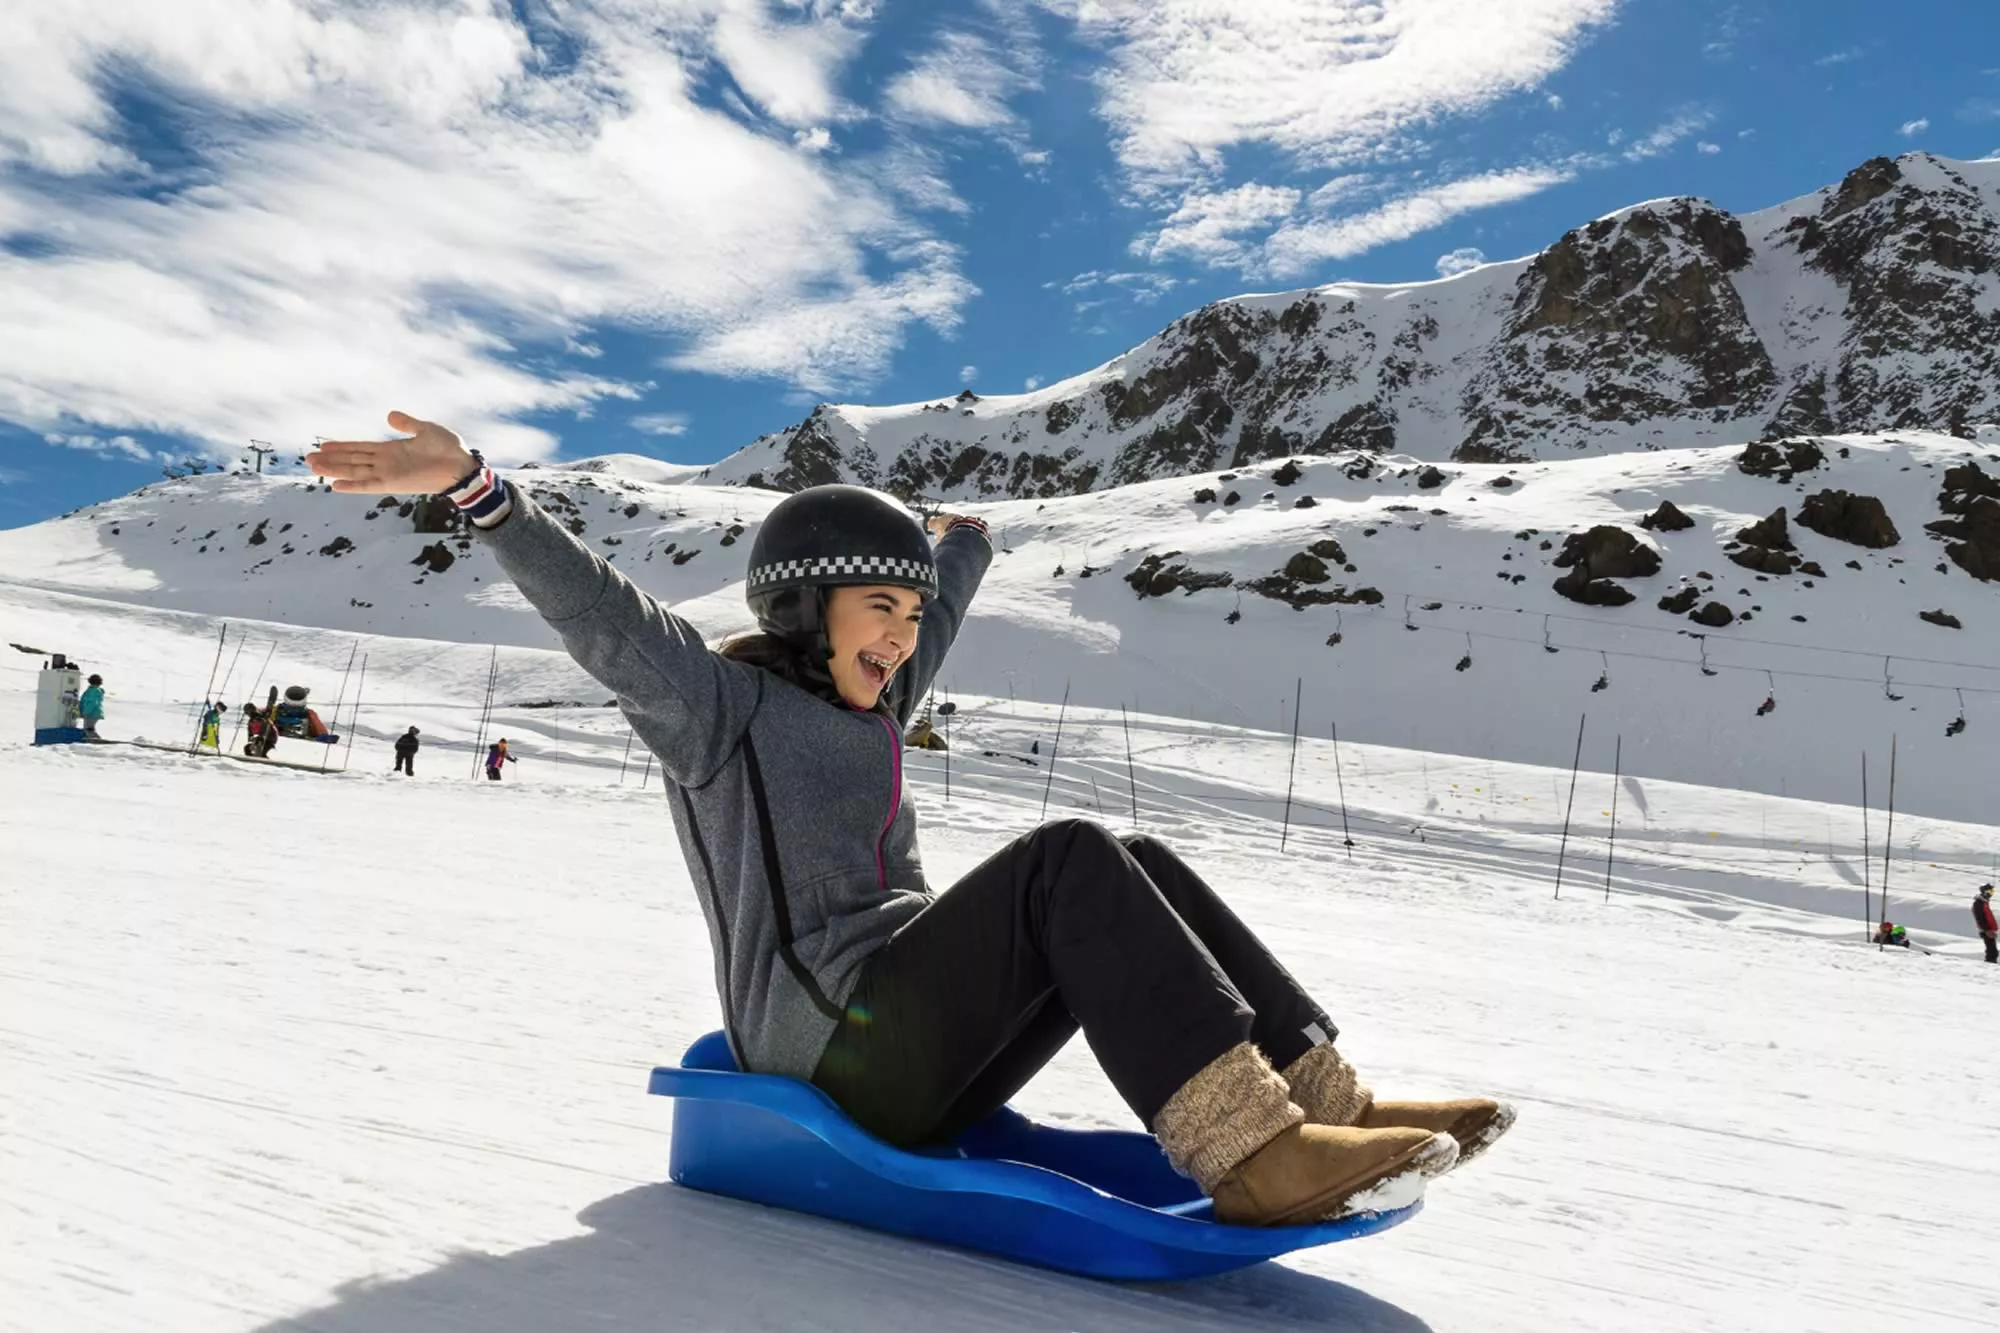 Centro de Ski Corralco in Chile, South America | Snowboarding,Skiing - Rated 4